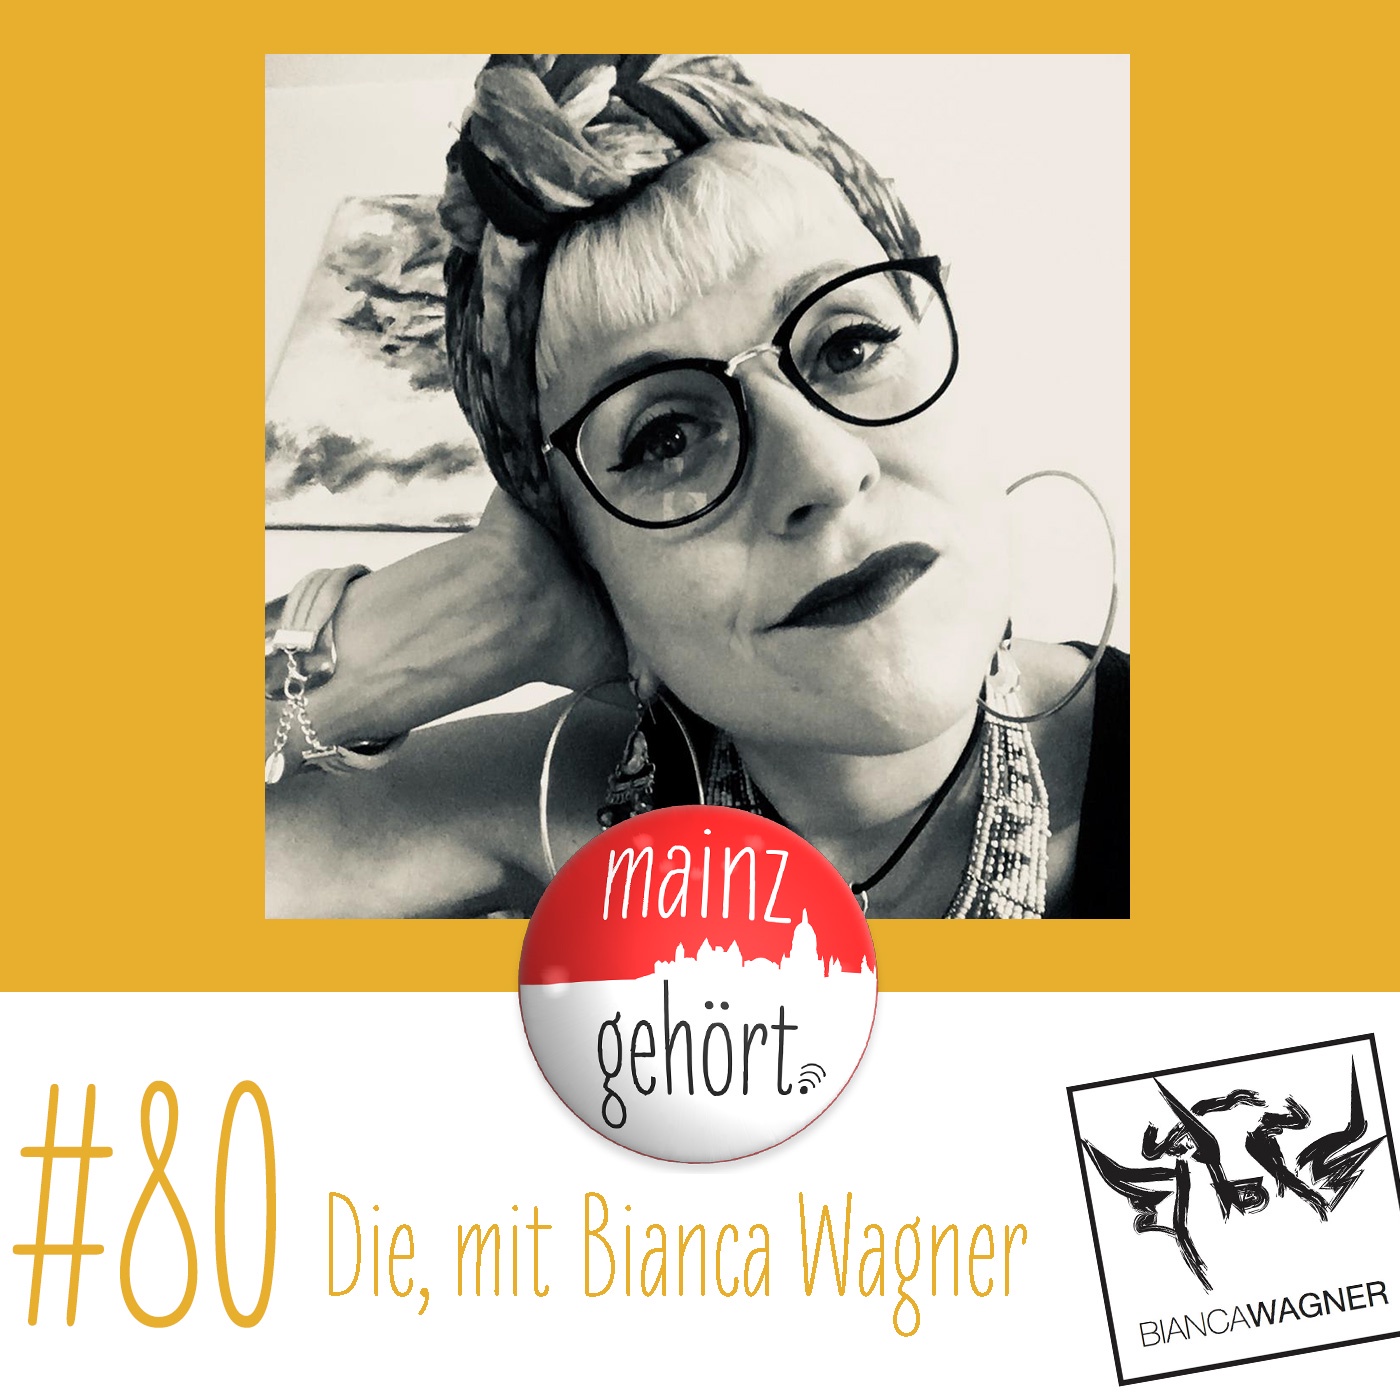 #80 Die, mit Bianca Wagner